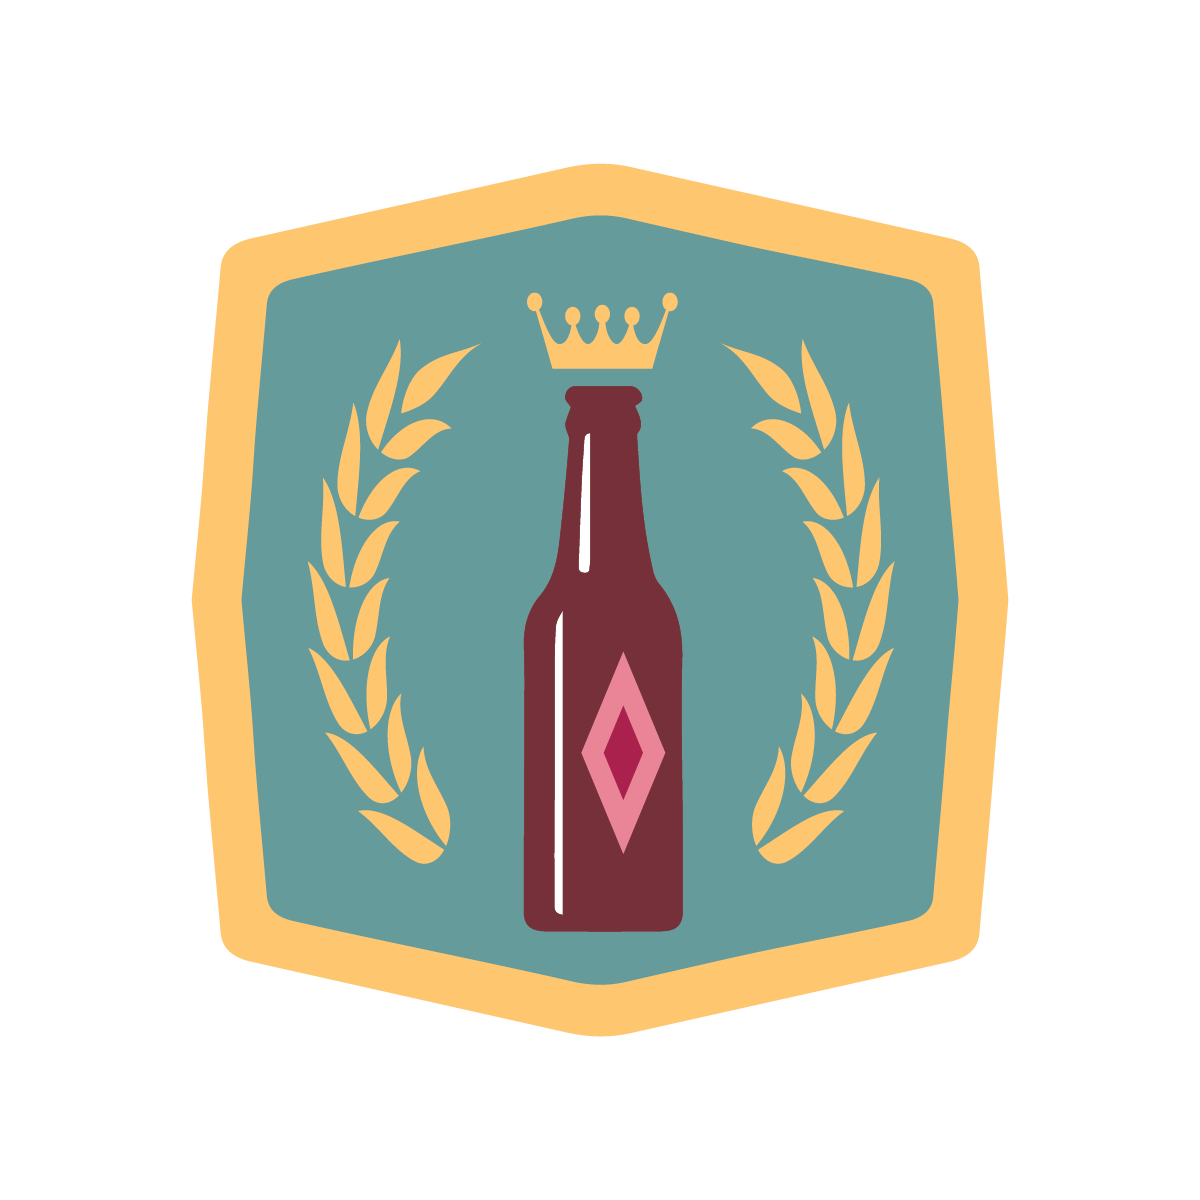 Golden Beer Badge